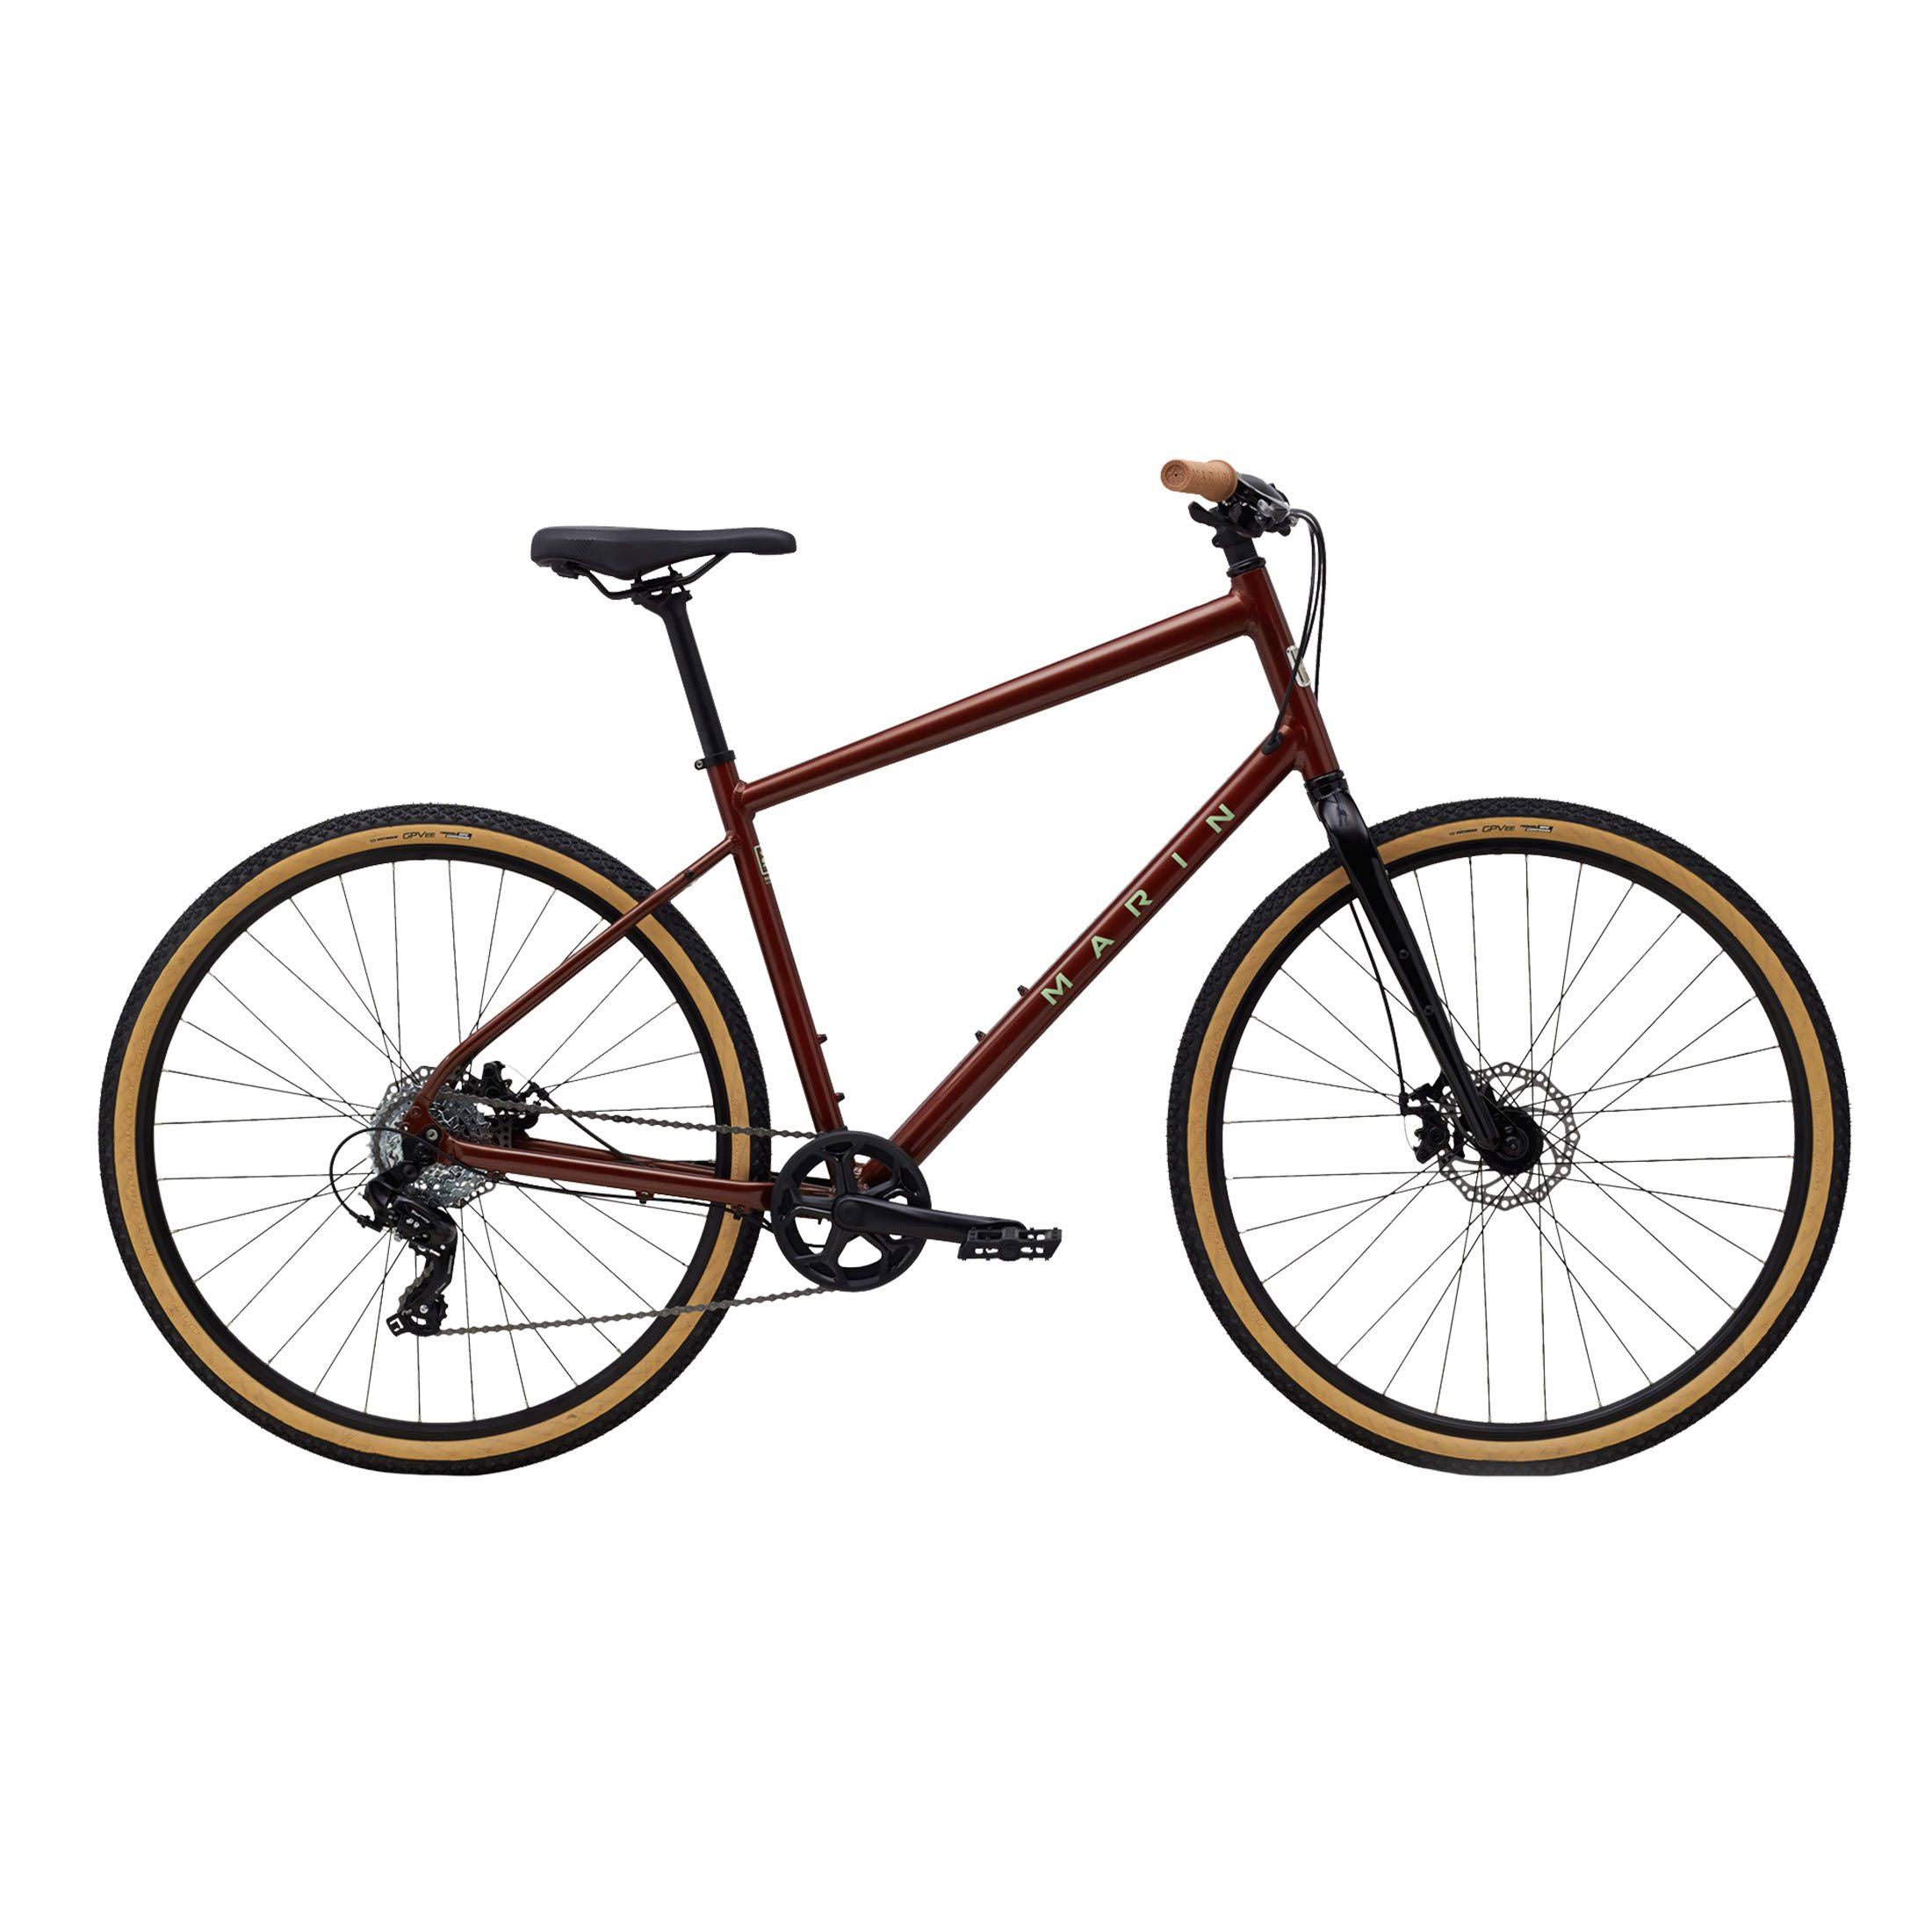 Marin Bikes Kentfield 1 700C Urban Bike Copper Brown - L